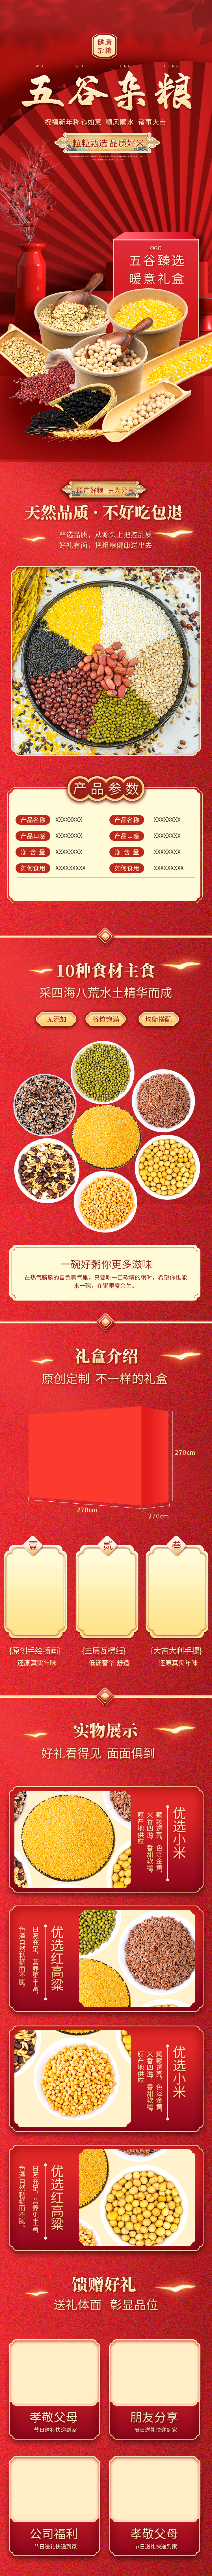 食品礼盒五谷杂粮红色中国风详情页图片